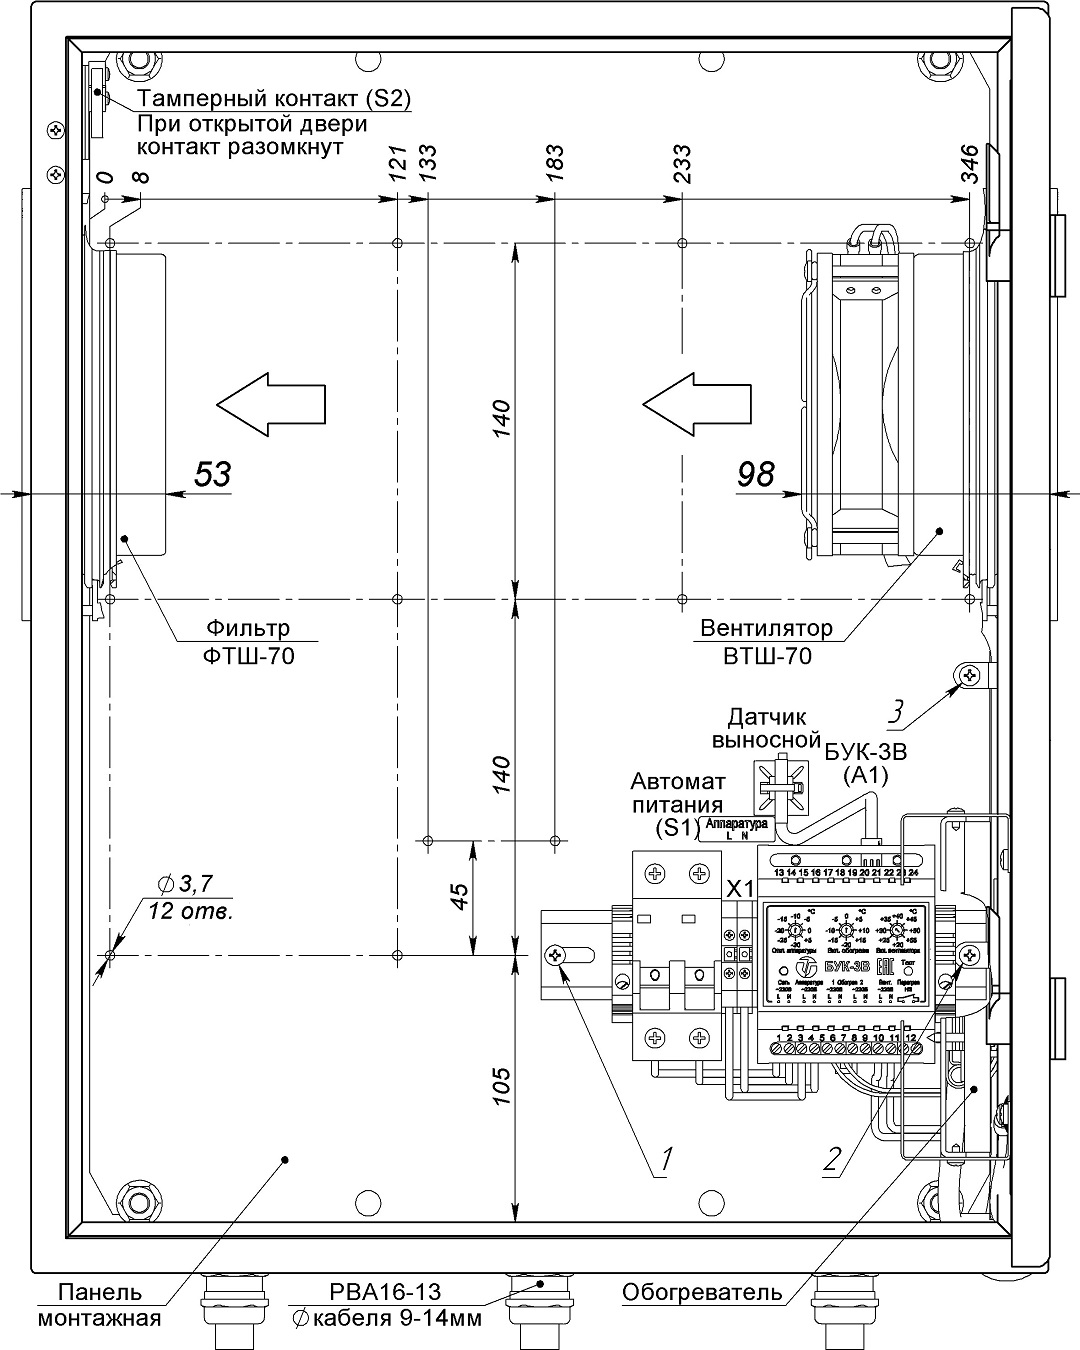 Устройство термошкафа ТШ-3В (дверь открыта на 90°)